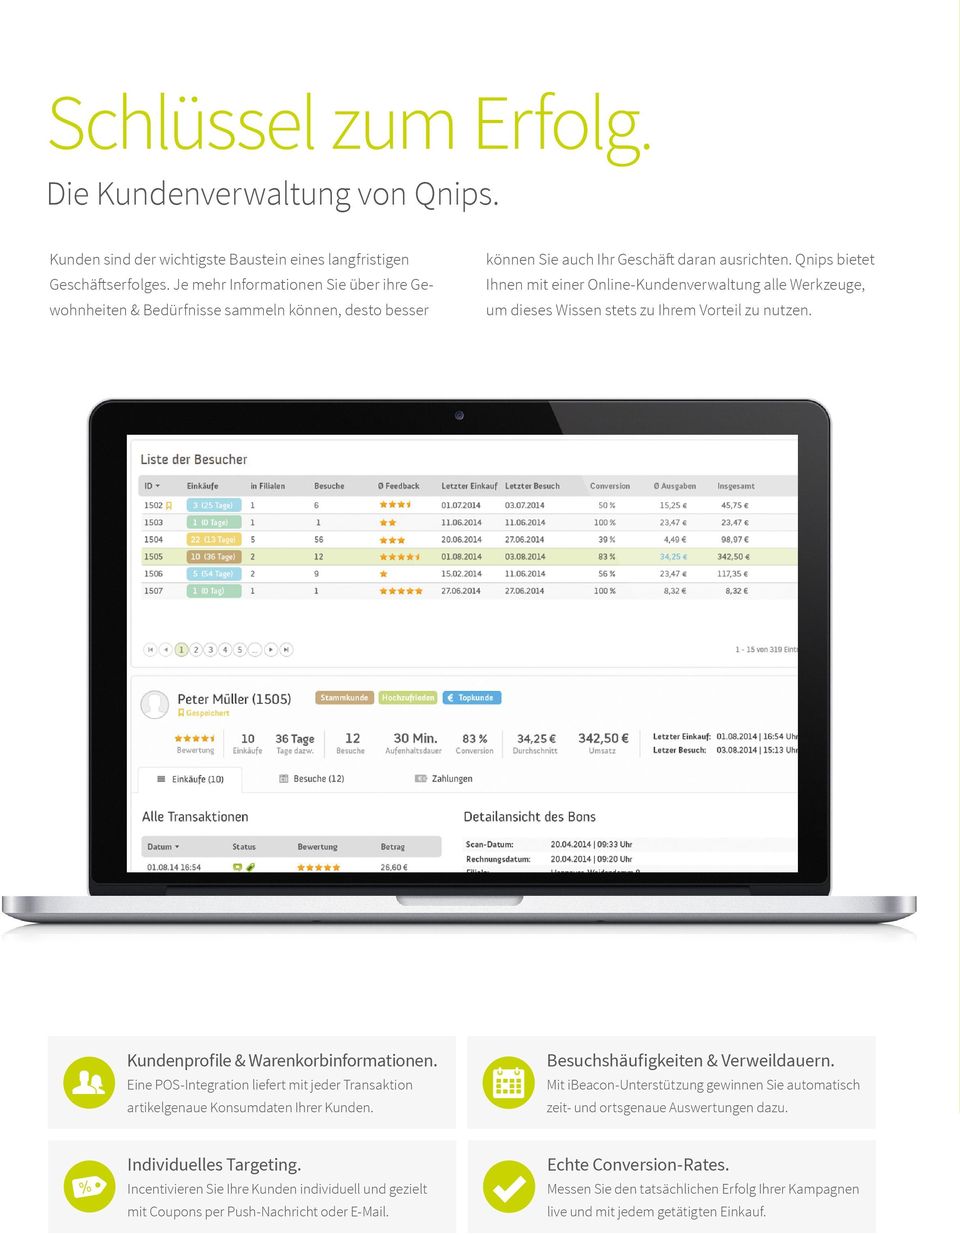 Qnips bietet Ihnen mit einer Online-Kundenverwaltung alle Werkzeuge, um dieses Wissen stets zu Ihrem Vorteil zu nutzen. Kundenprofile & Warenkorbinformationen.